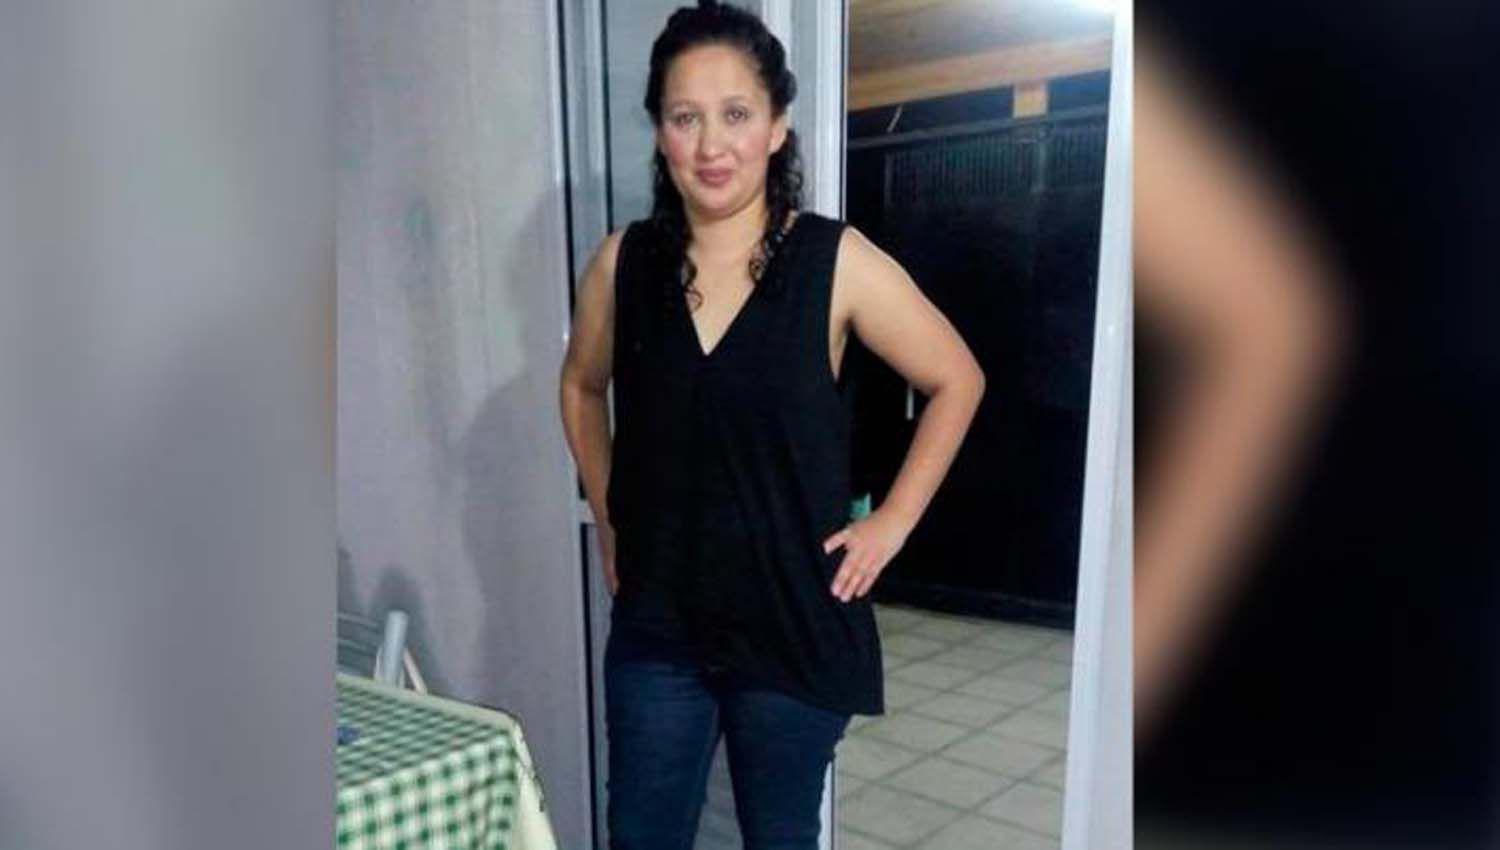 La policia busca intensamente a una mujer del barrio Ejeacutercito Argentino